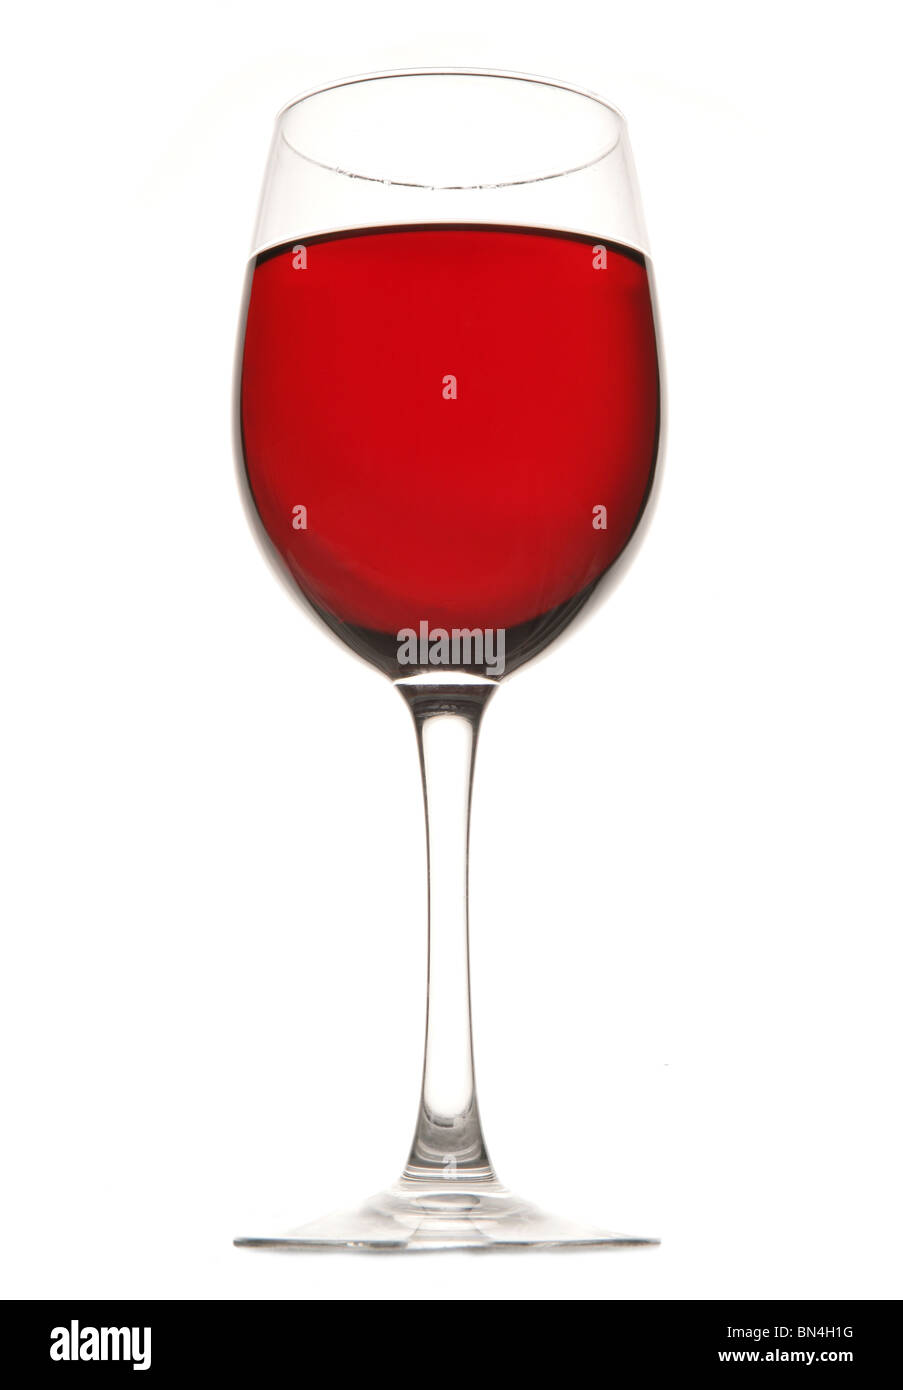 Red wine in glass in studio Stock Photo